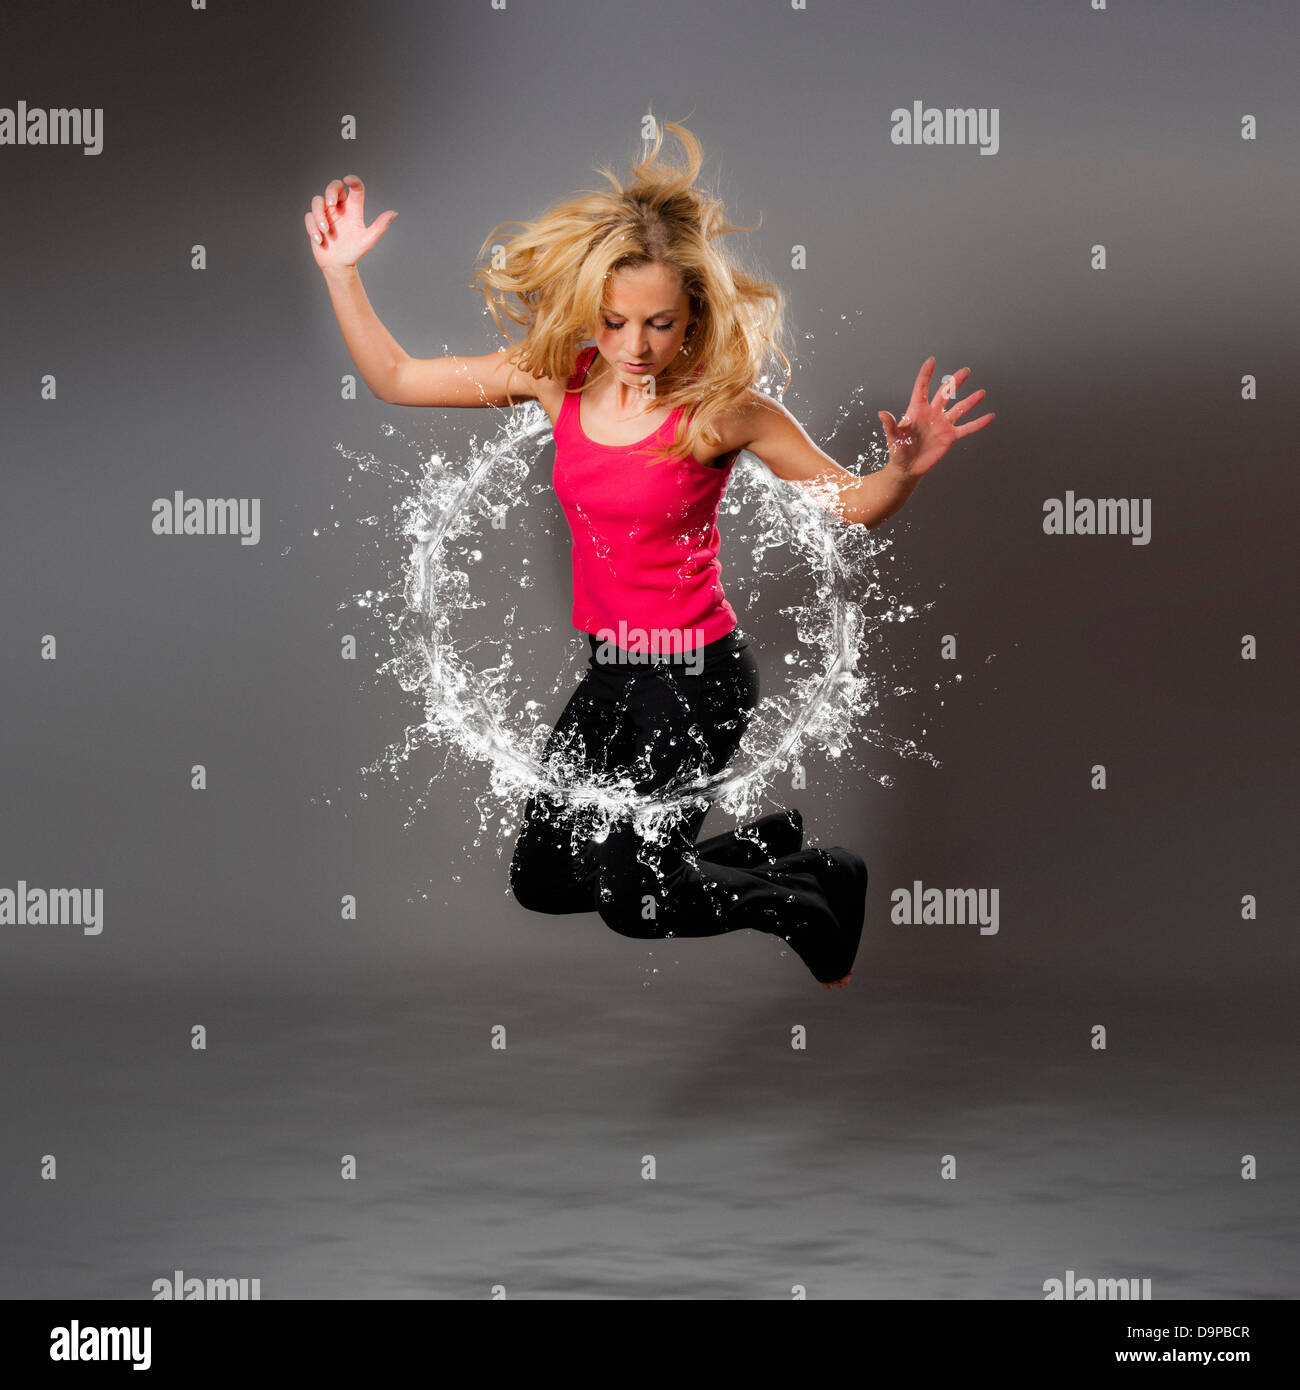 Zusammengesetzte Aufnahme einer jungen kaukasischen Frau, die durch einen kreisförmigen Wasserspritzer springt Stockfoto